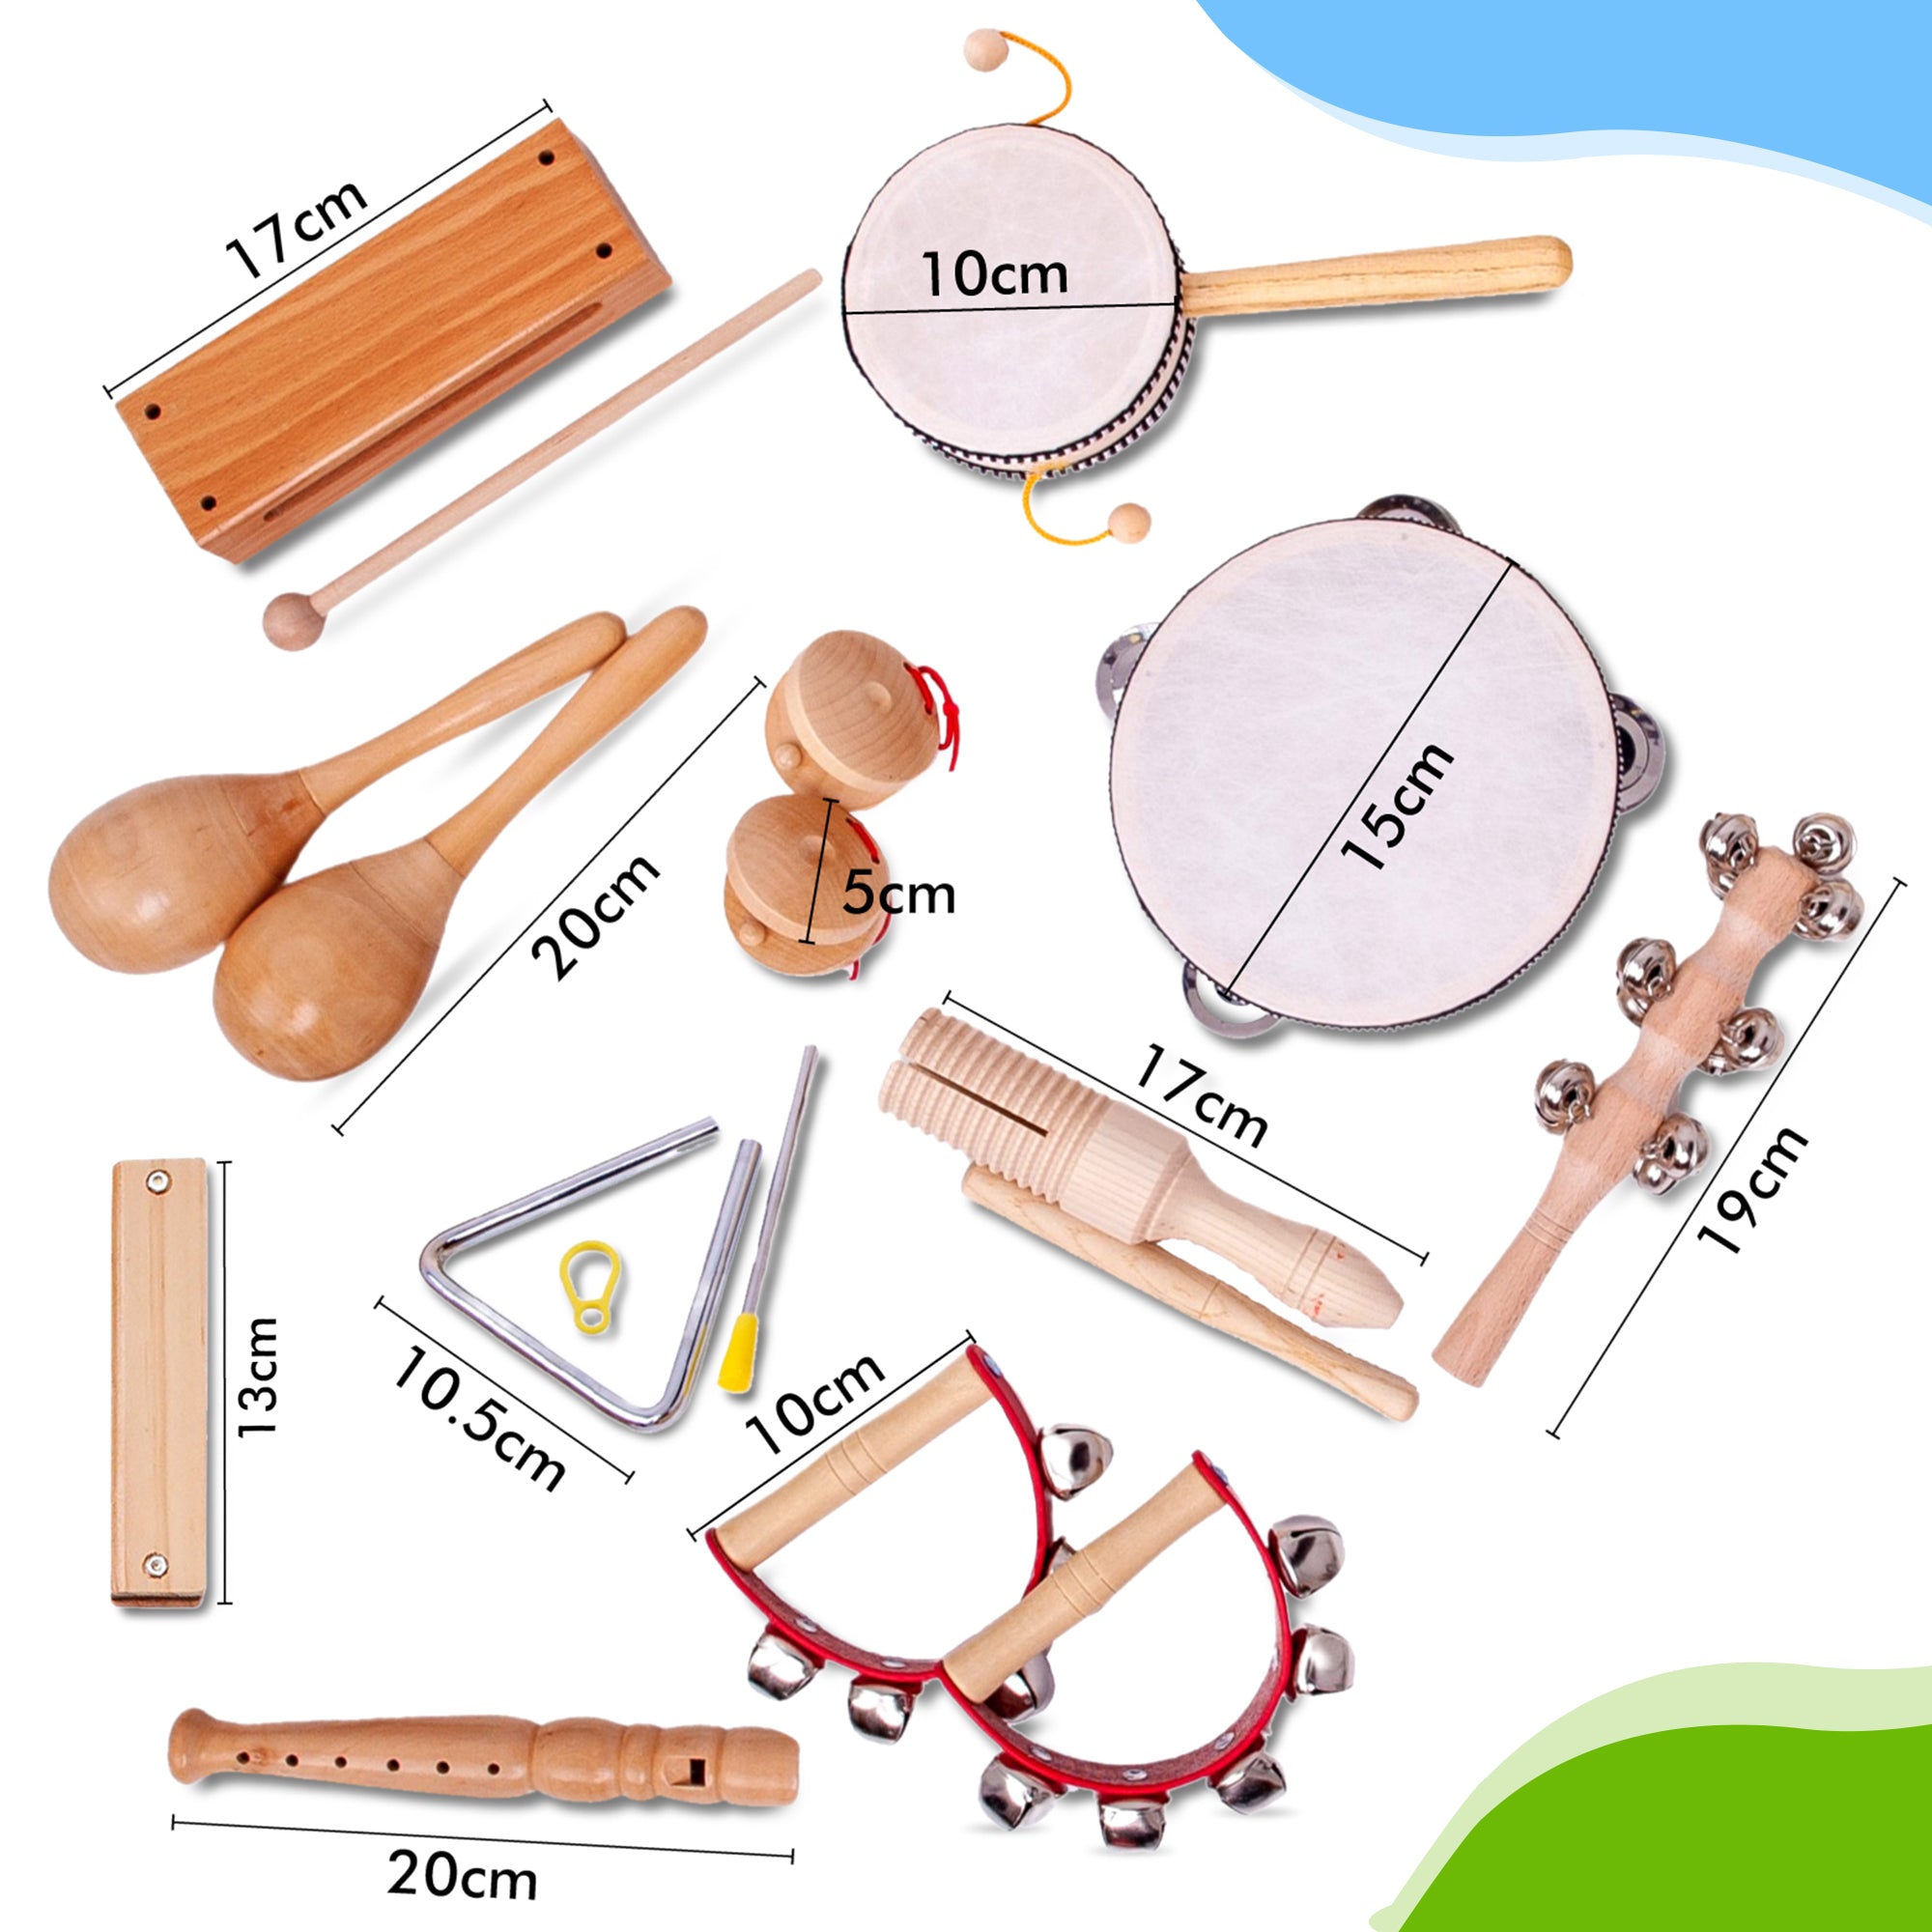 Estas son las dimensiones de los instrumentos de juguete de madera, fabricados especialmente para niños. Pídelos ahora mismo y toca esta flauta dulce o armónica de madera mañana. Puedes elegir tu propio instrumento de juguete.